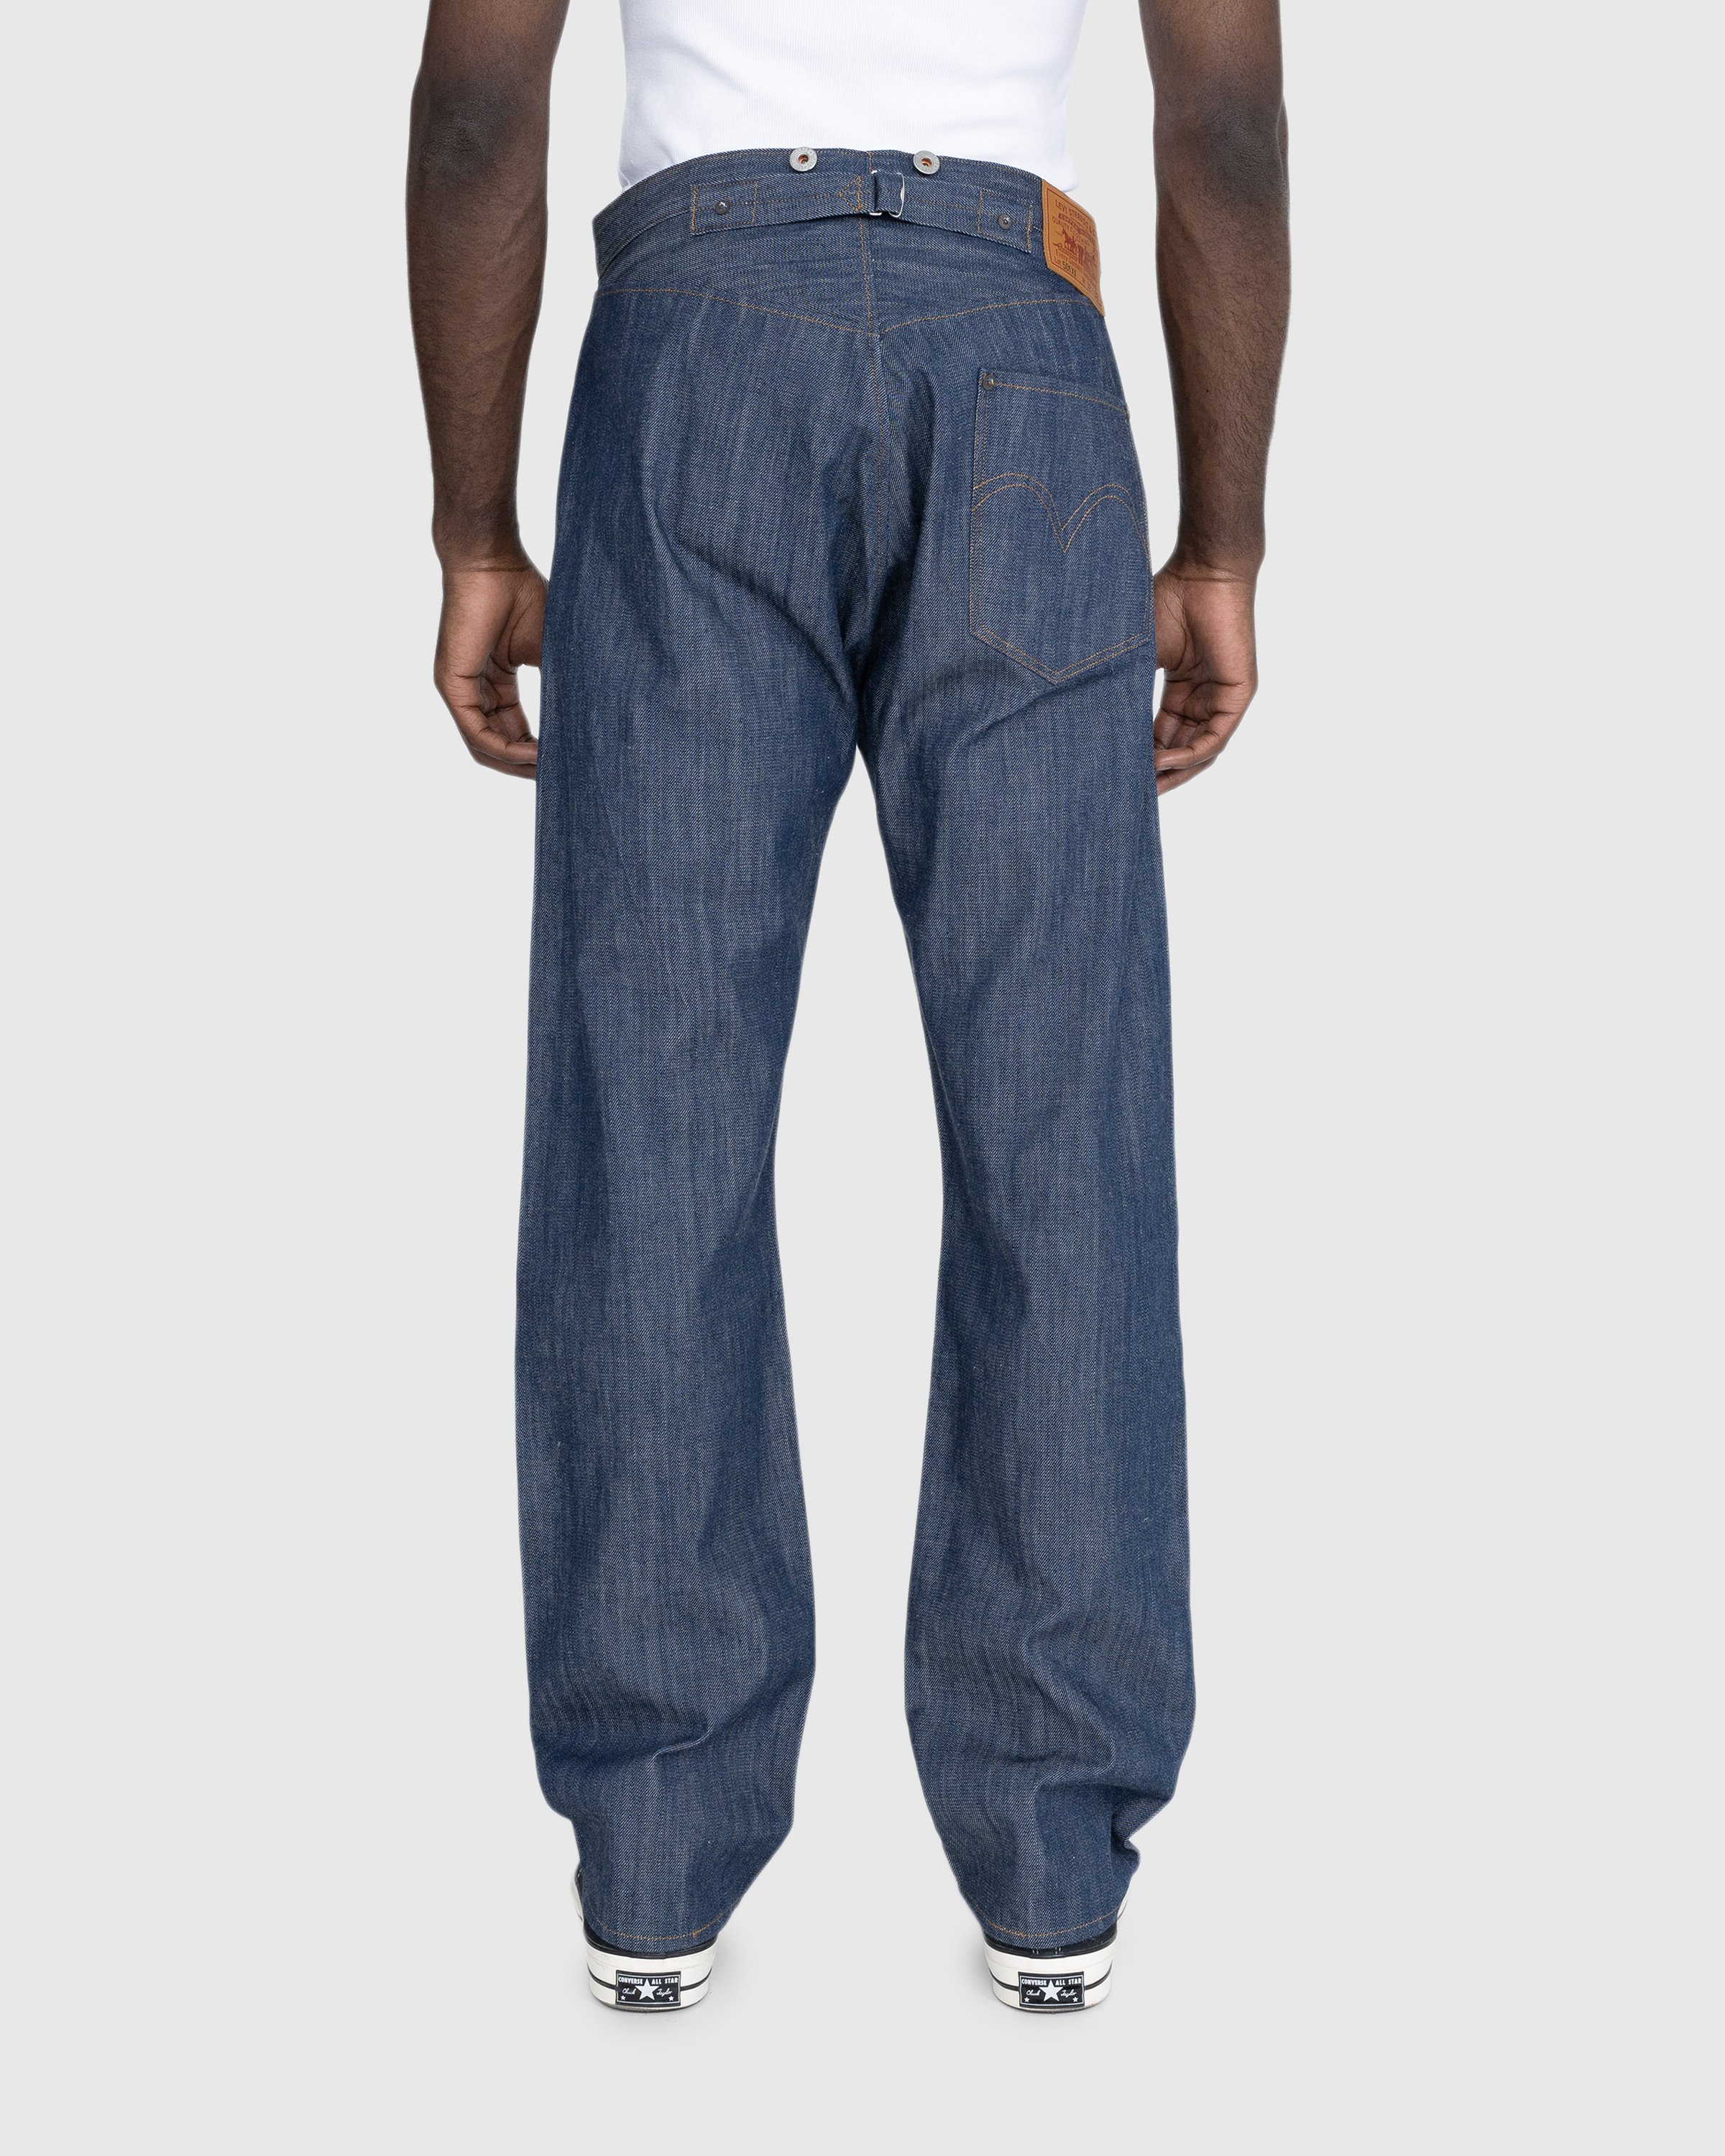 Levi's - 1890 501 Jeans Dark Indigo Flat Finish - Clothing - Blue - Image 4